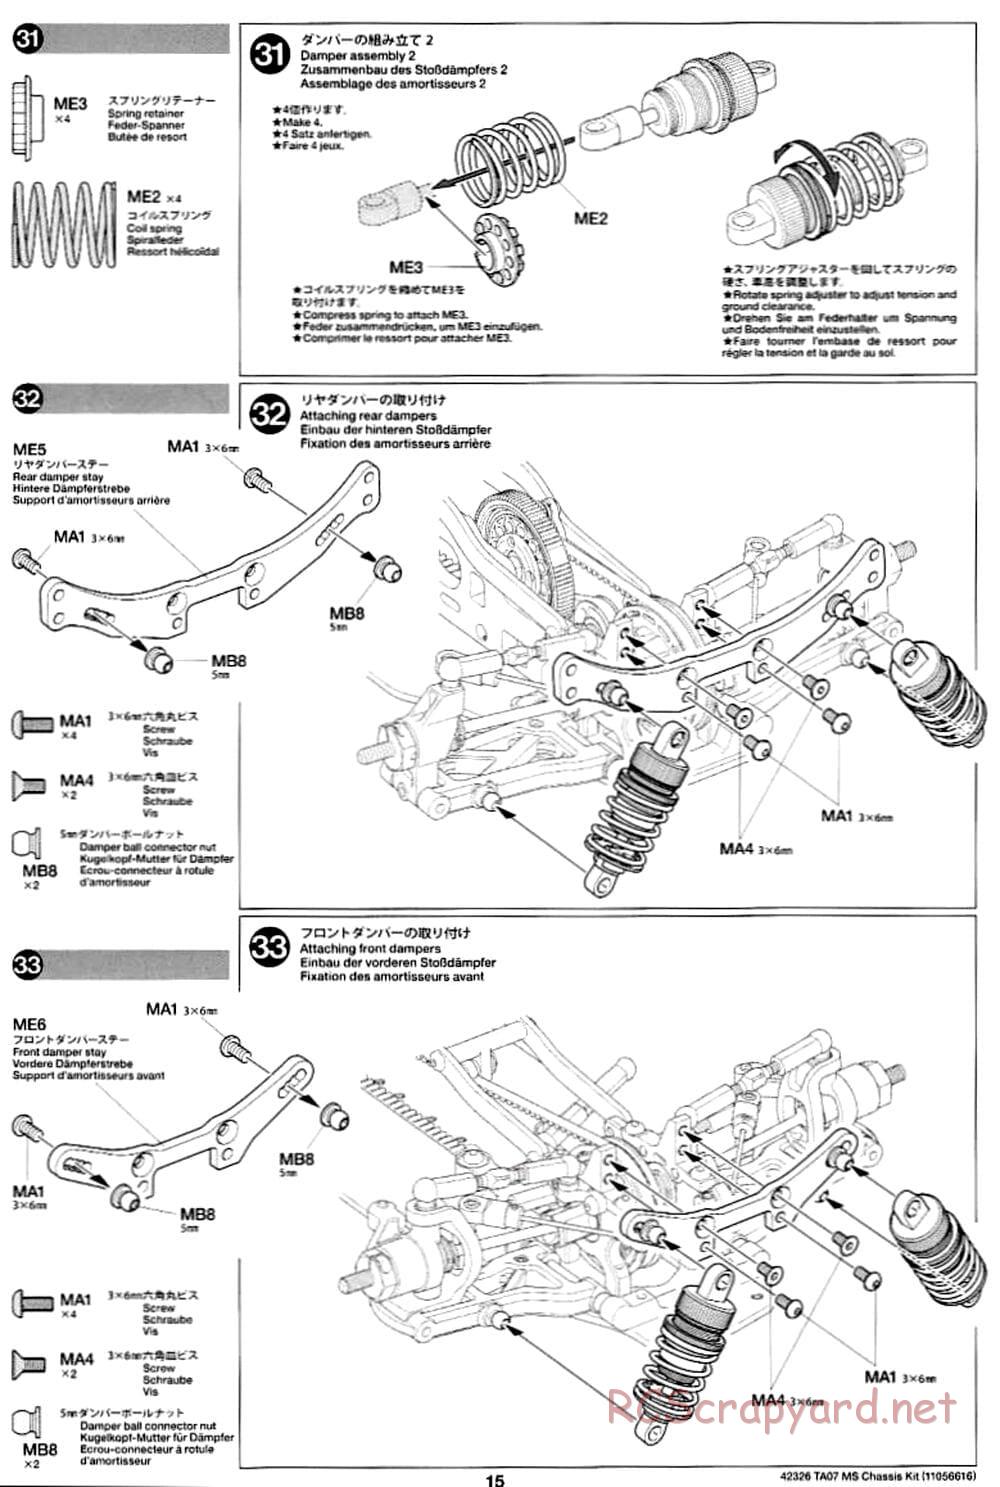 Tamiya - TA07 MS Chassis - Manual - Page 15